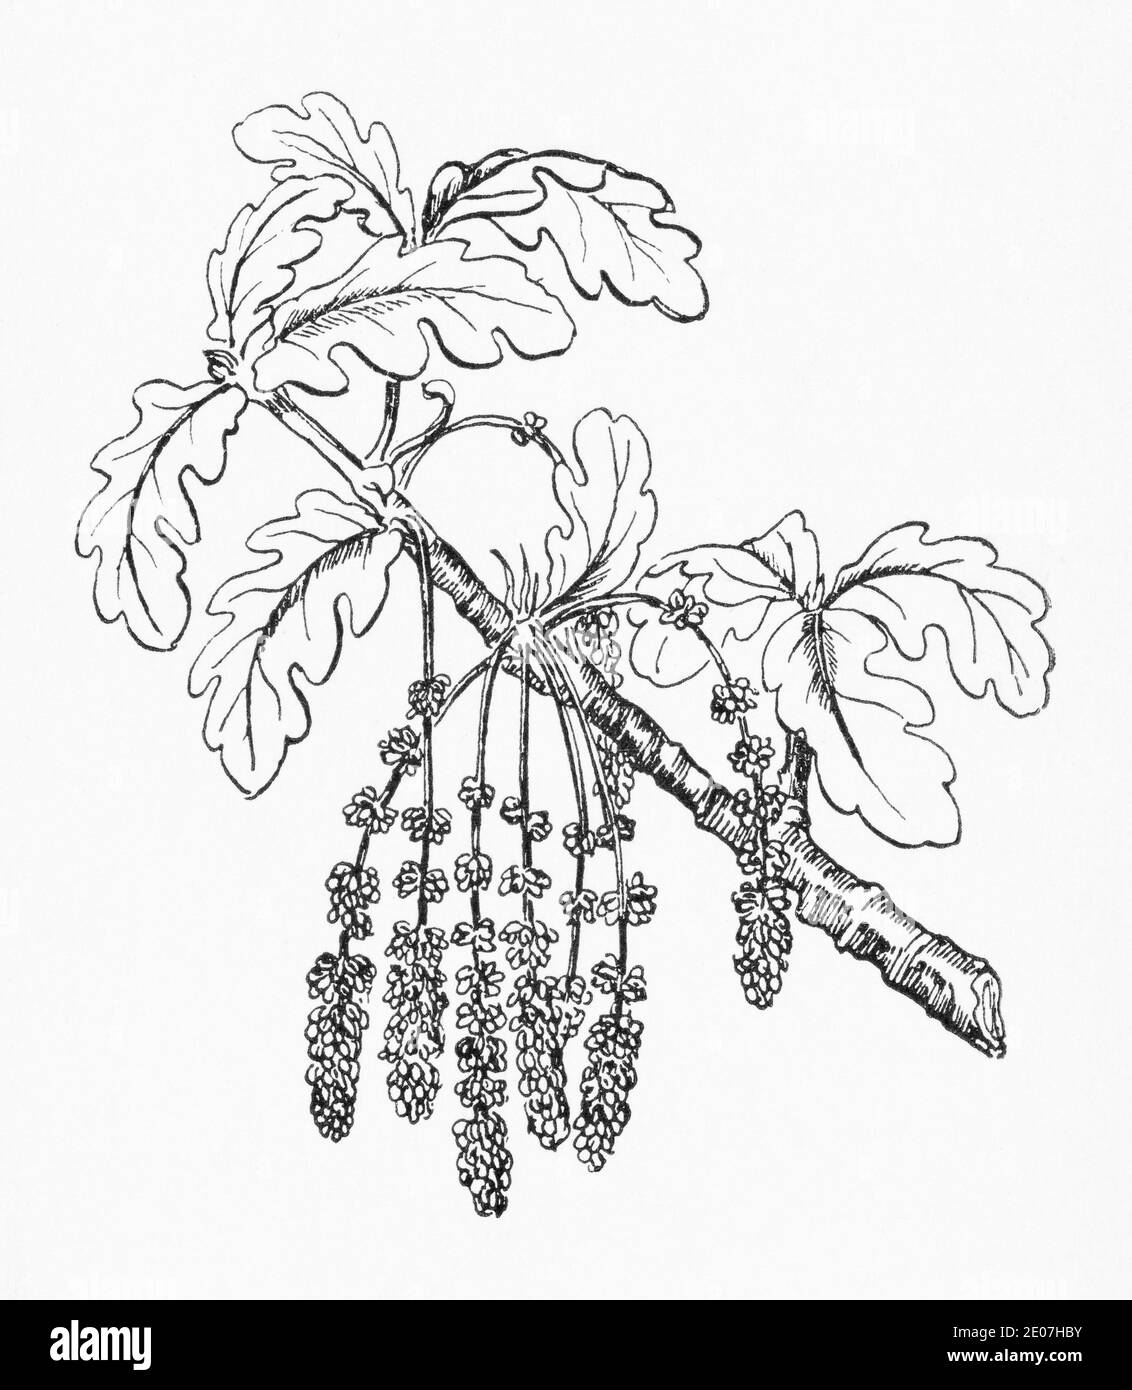 Ancienne gravure d'illustration botanique de Pedunculate Oak / Quercus robur, Quercus pedunculata. Plante médicinale traditionnelle. Voir Remarques Banque D'Images